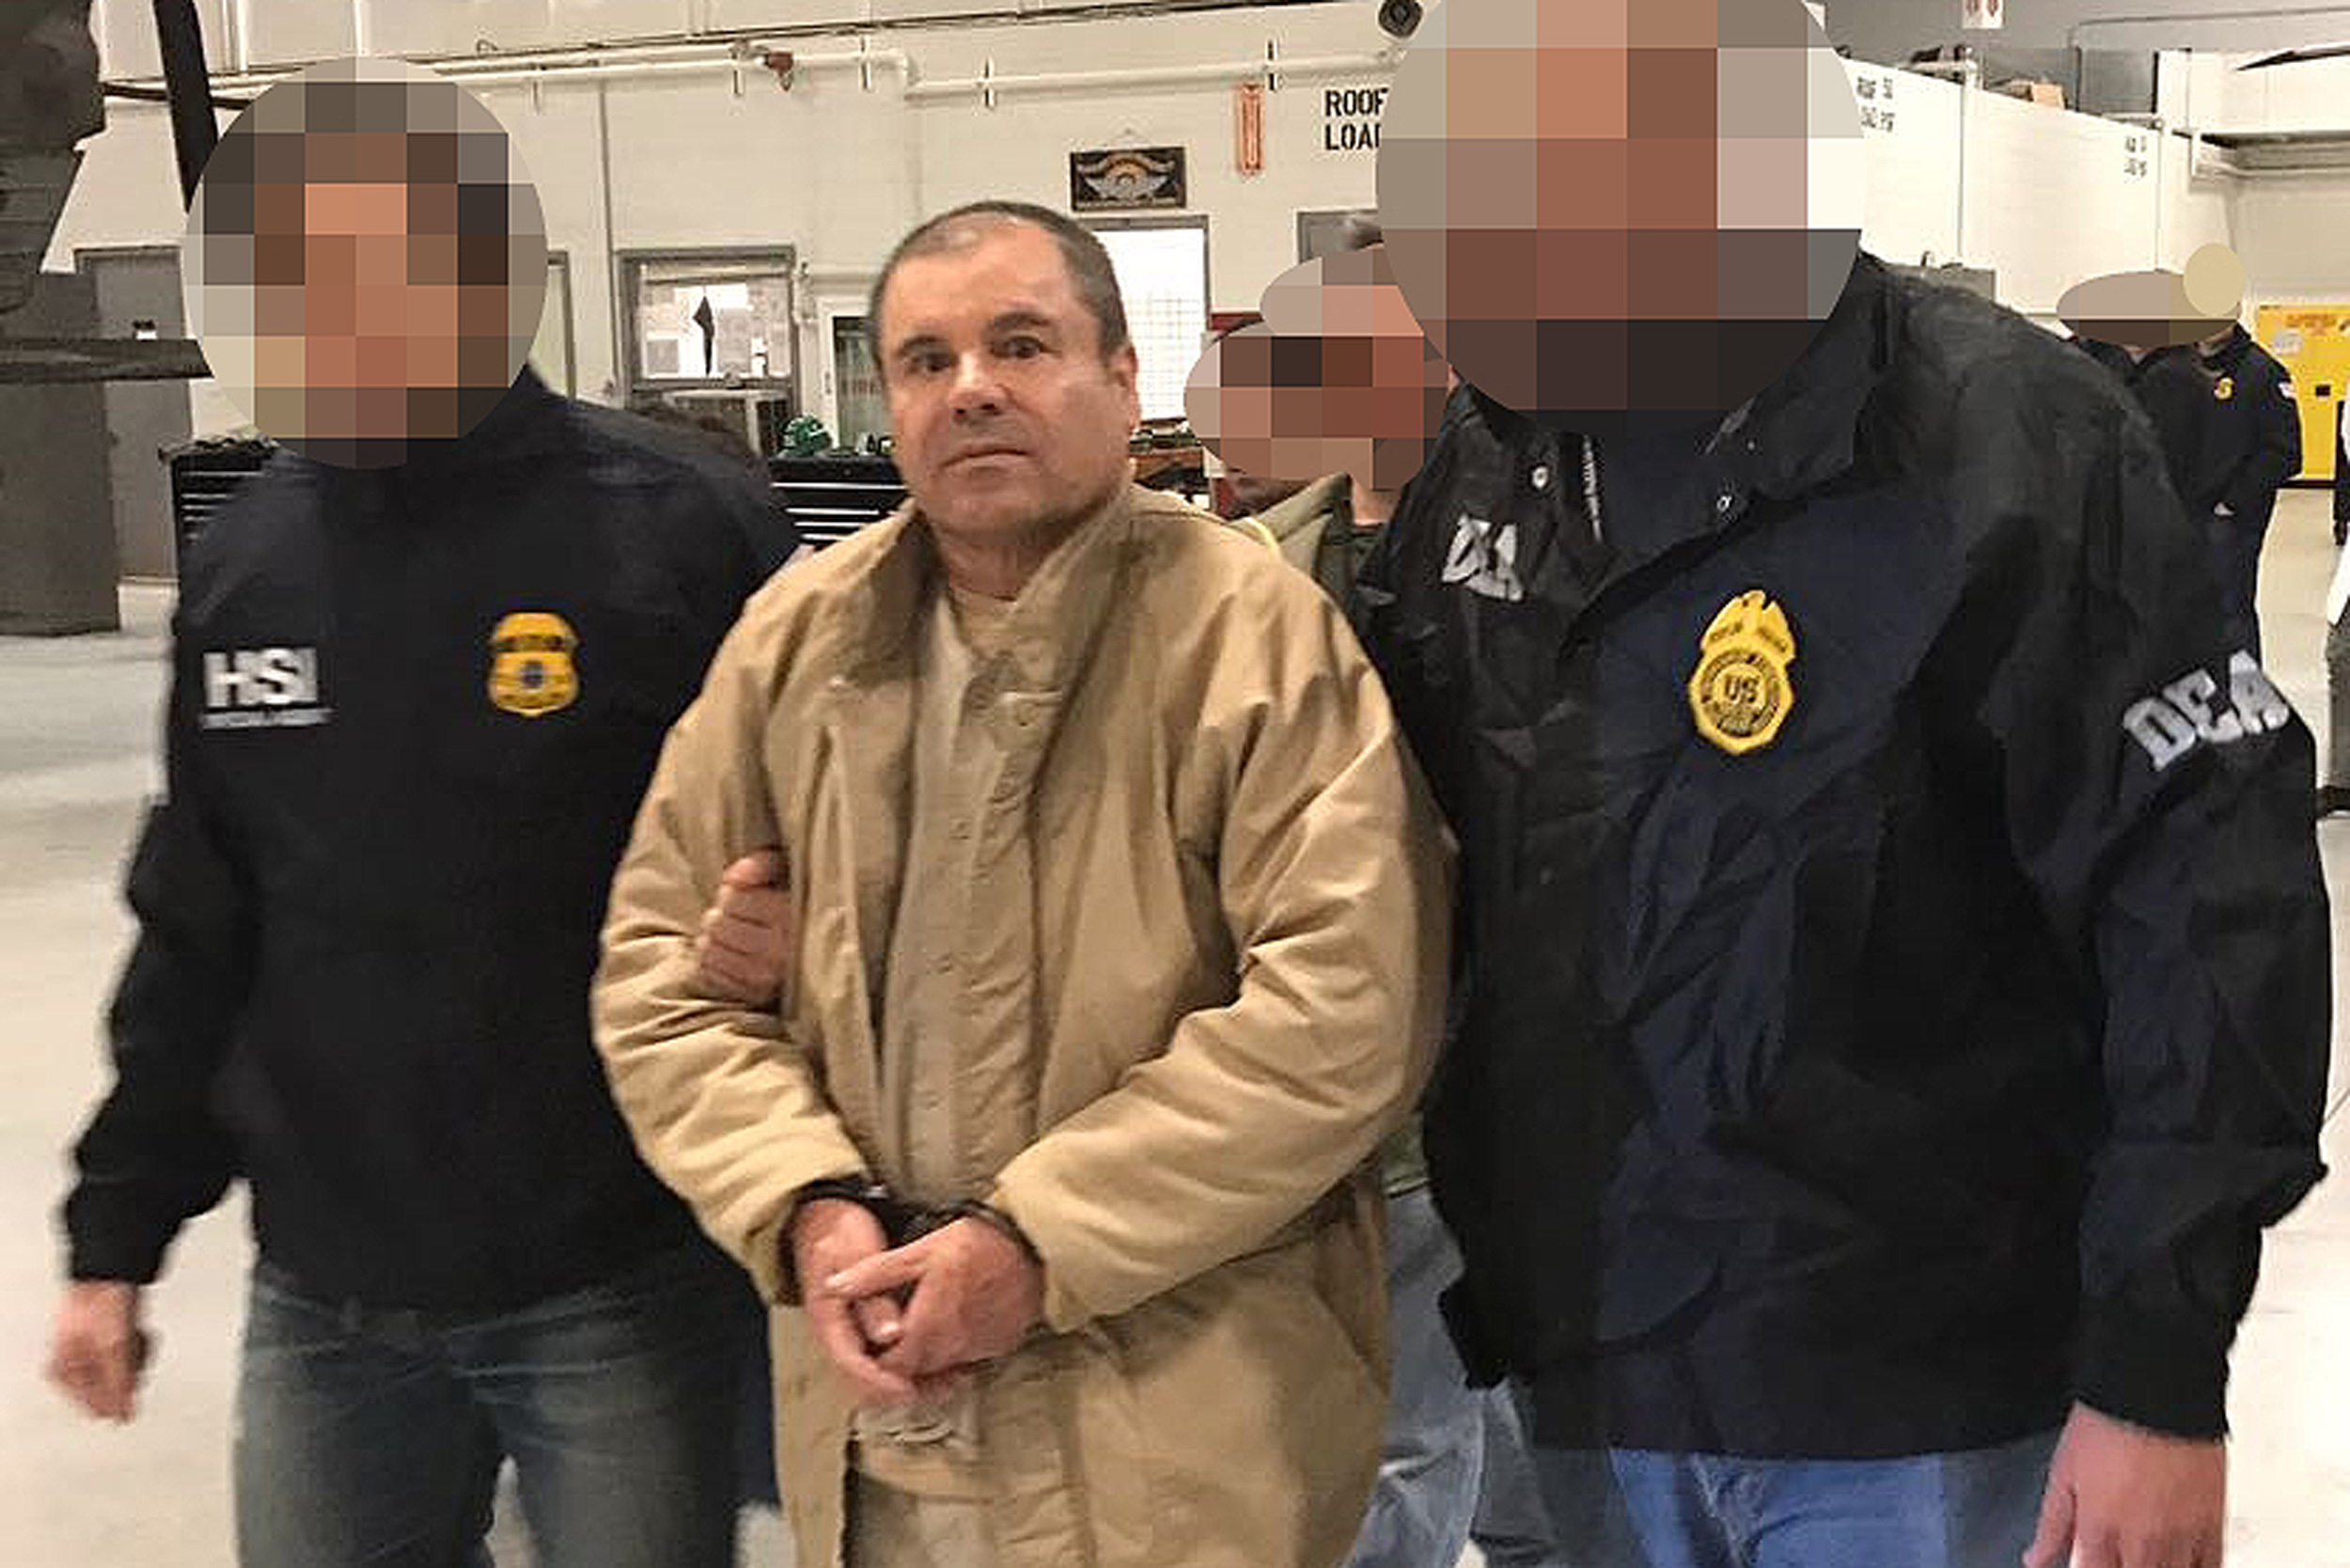 Una de las últimas fotografías del Chapo Guzmán es esta, cuando era escoltado el día que fue extraditado de México a EE. UU. (Foto Prensa Libre: Hemeroteca PL)